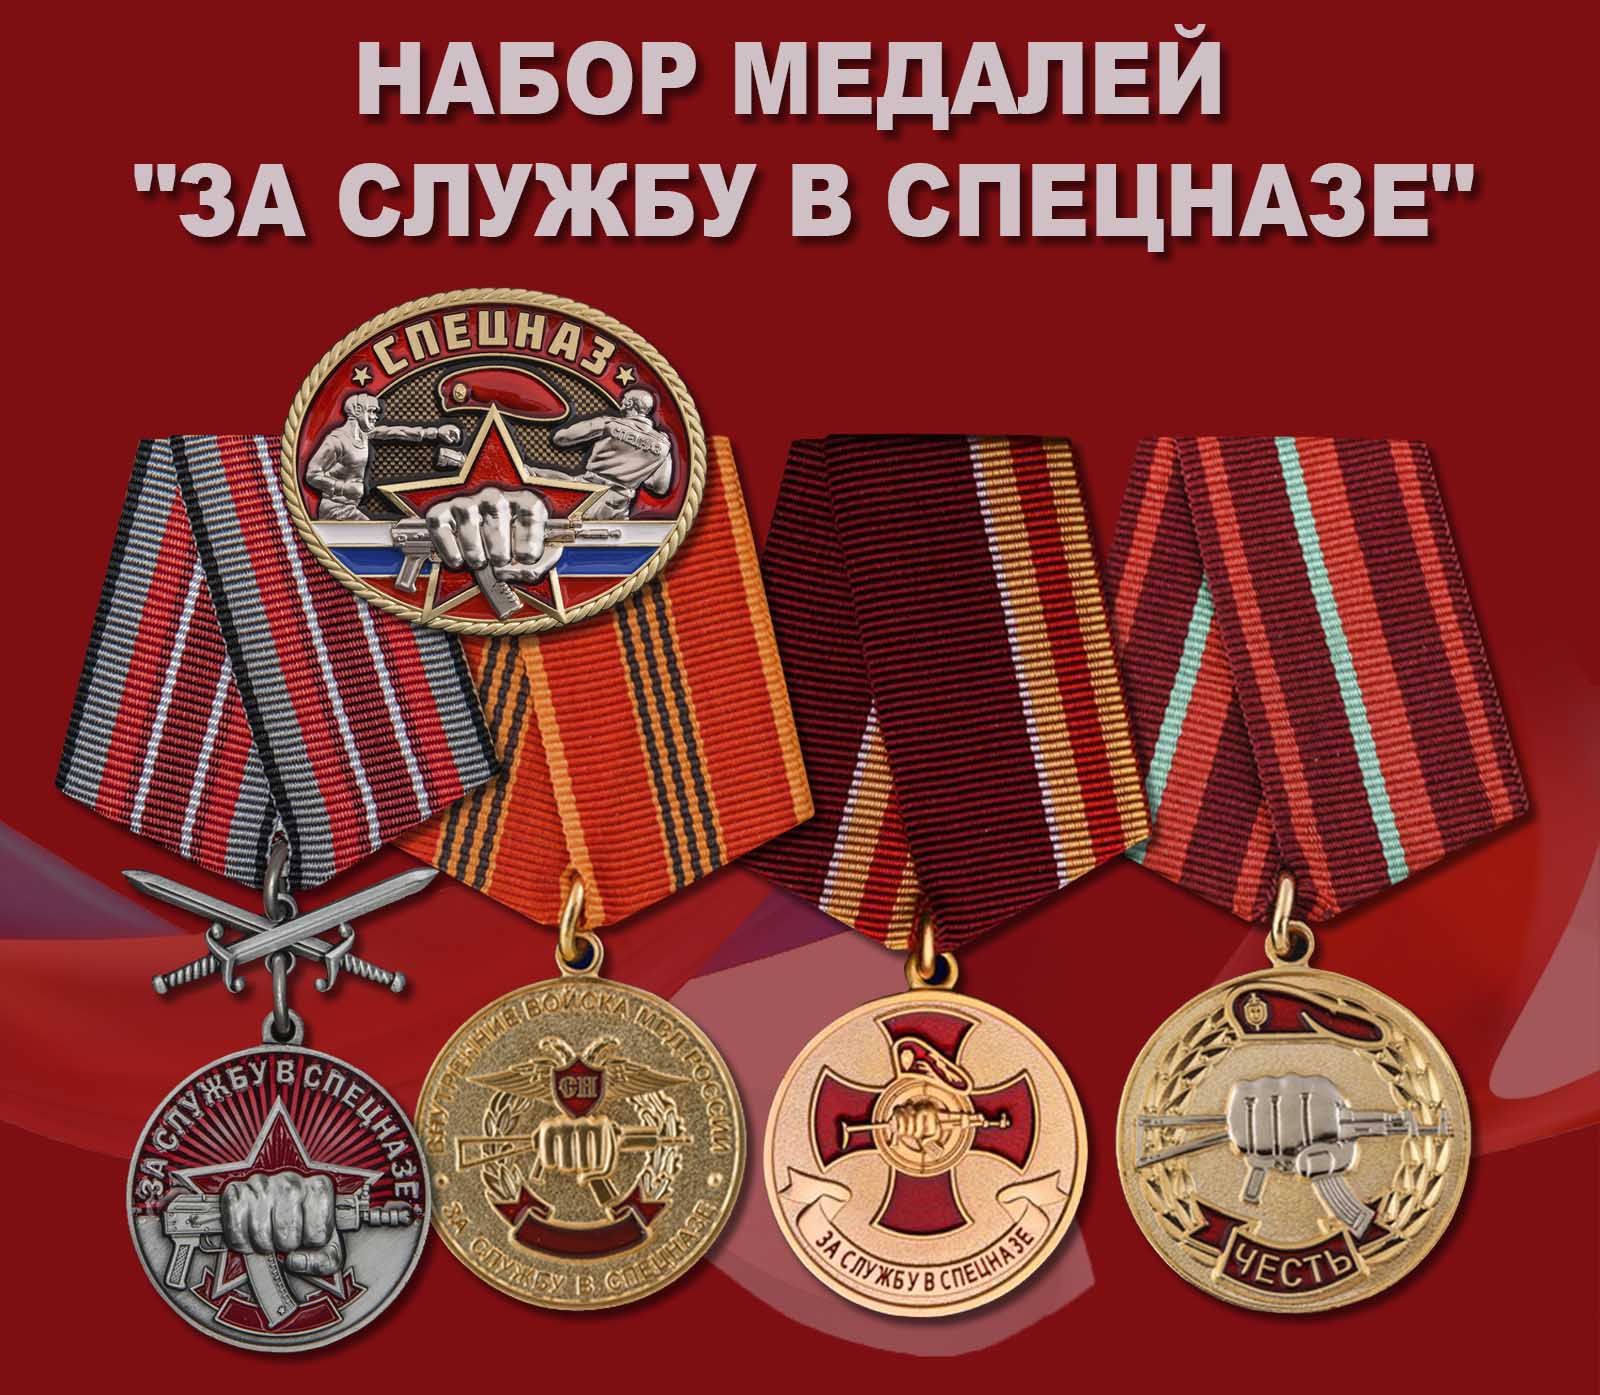 Купить набор медалей "За службу в спецназе"